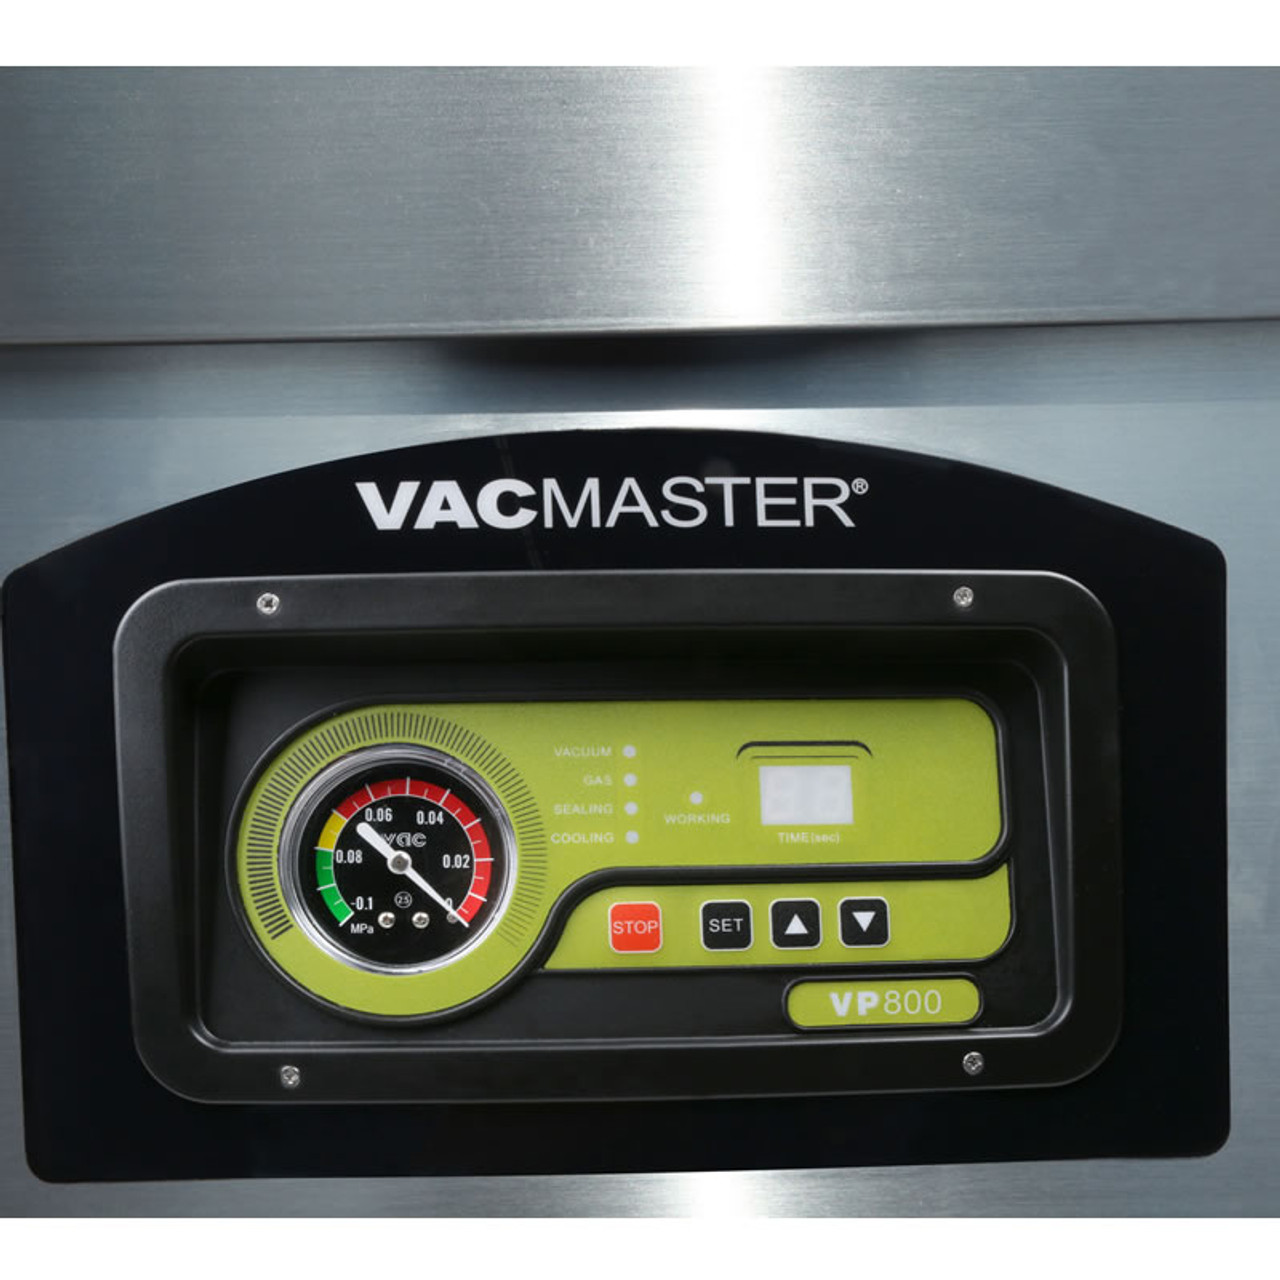 Vacmaster VP545 Vacuum Sealer Built W/1.5hp Pump | Bakedeco